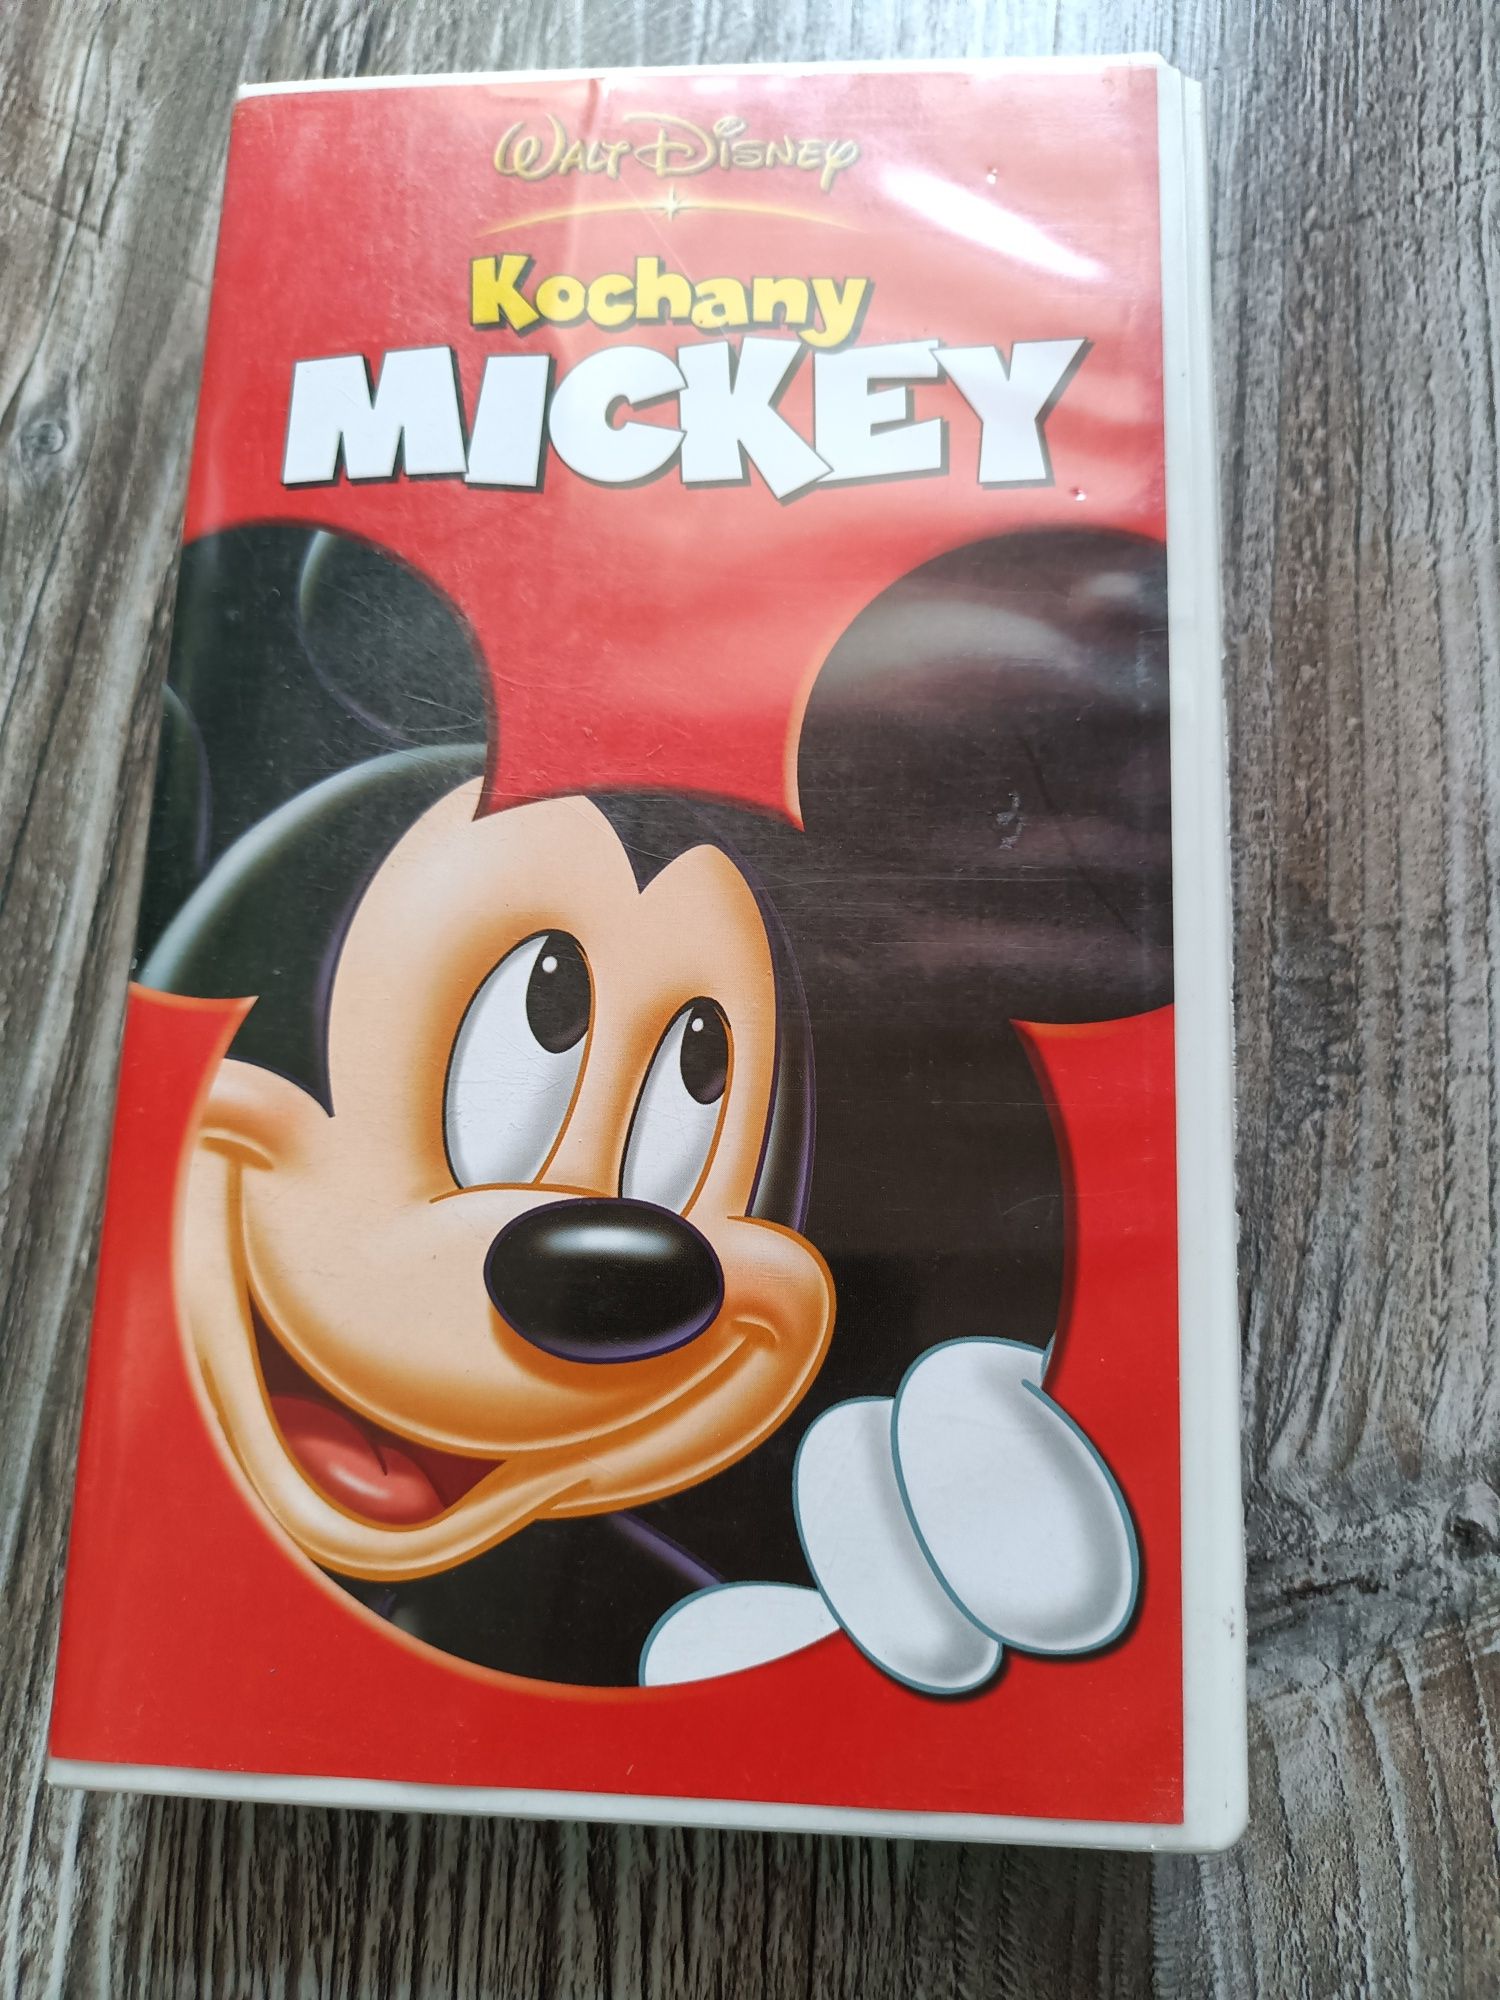 Wald Disney Kochany Mickey kaseta VHS myszka Mickey